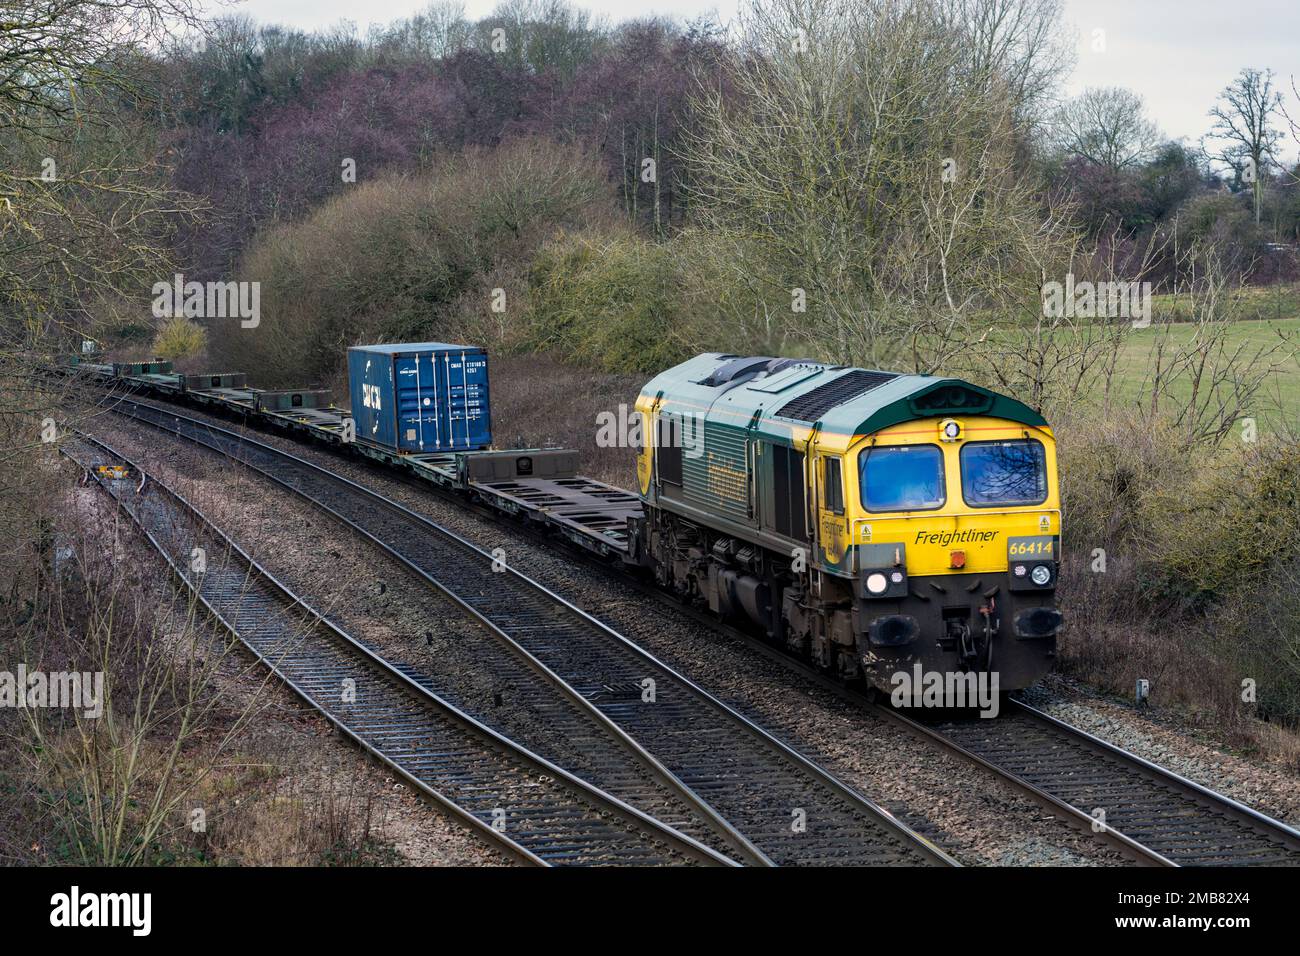 Freightliner Klasse 66 Diesellokomotive Nr. 66414 führt einen intermodalen Zug in Warwickshire, Großbritannien Stockfoto